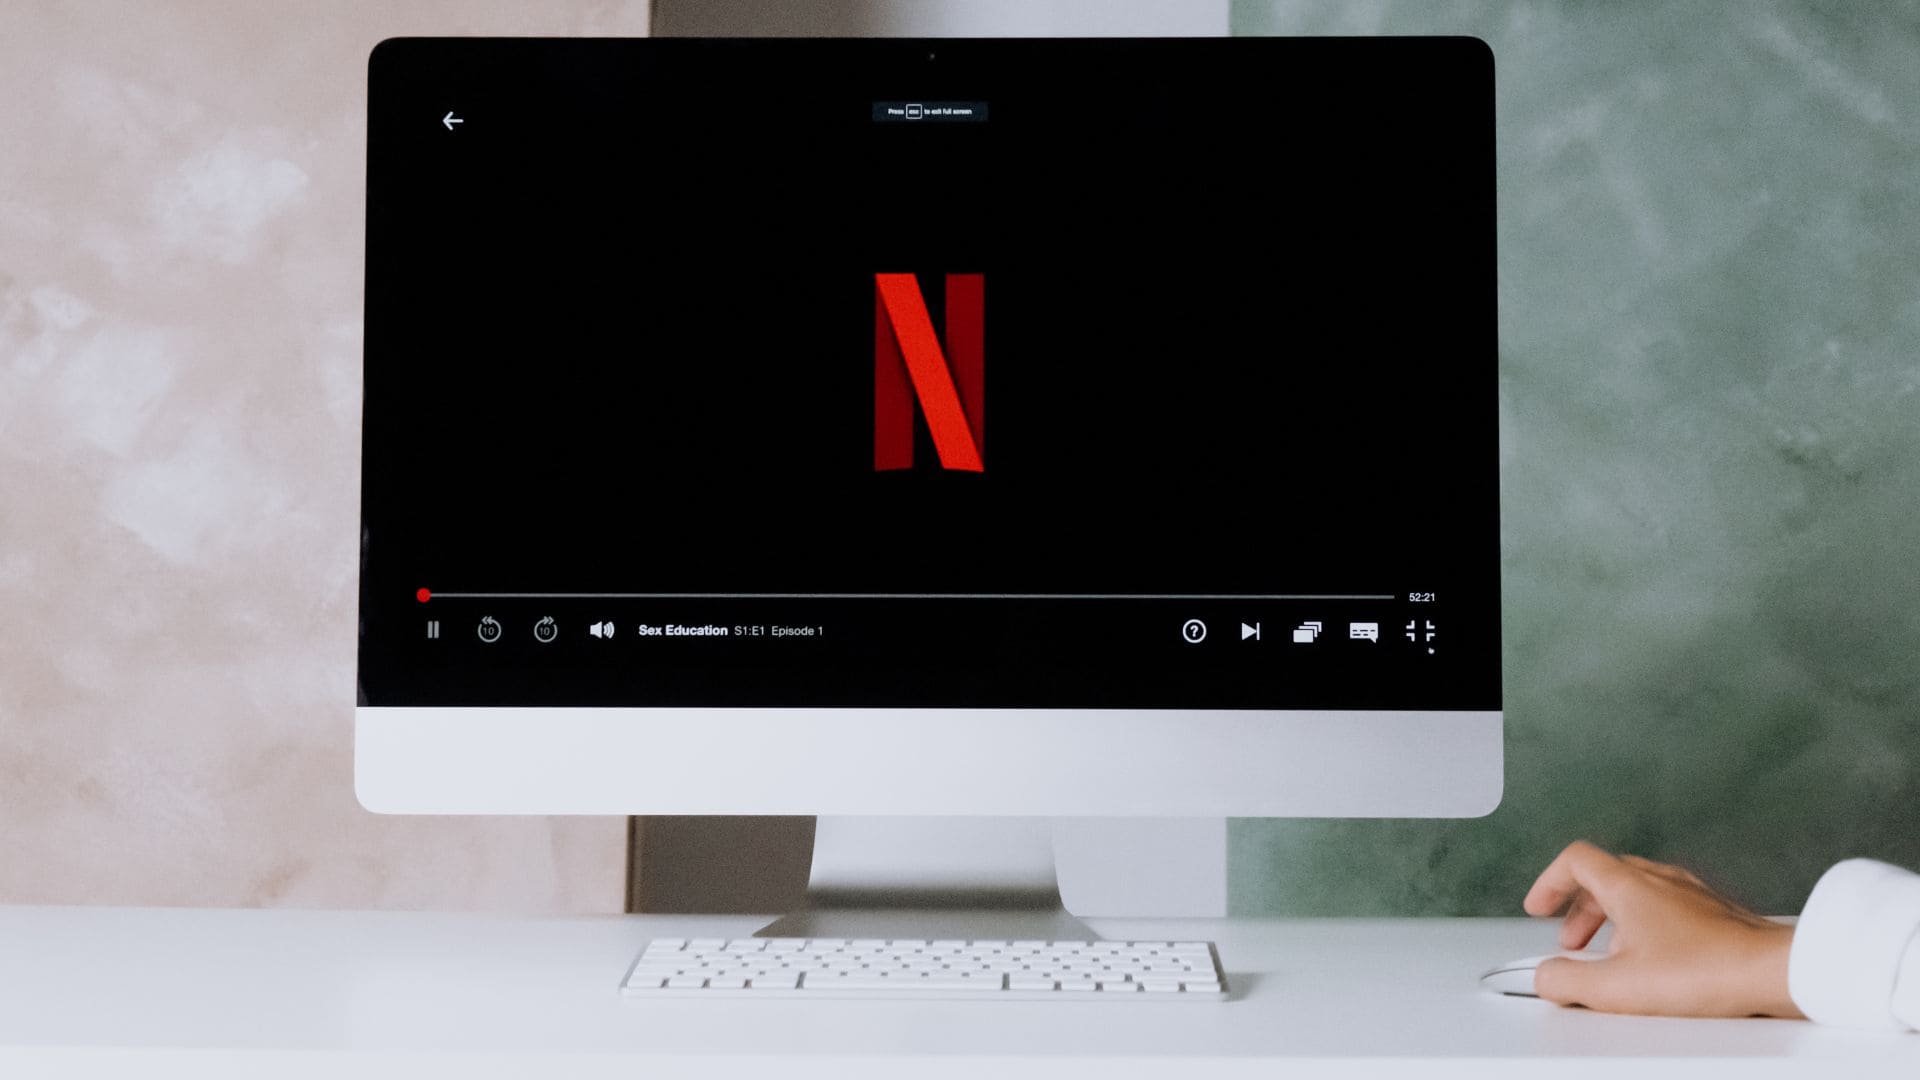 Netflix tarifa estándar anuncios con novedades